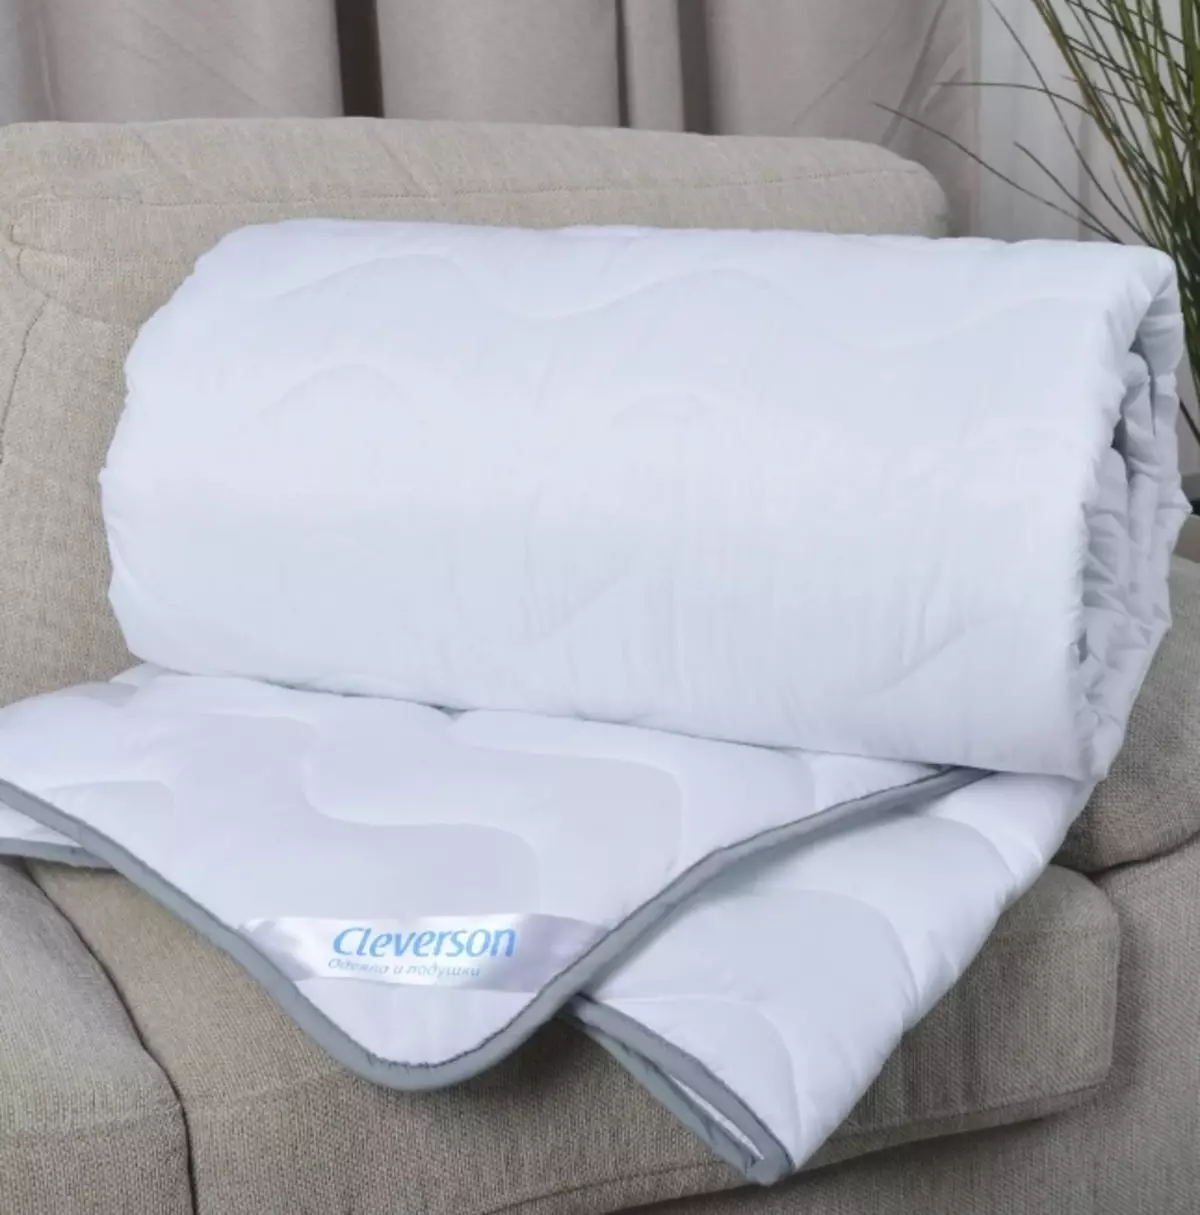 Hollofiber antklodės: pliusai ir minusai užpildu. Kas yra geriau Singryburg? Kas tai yra ir kaip plauti skalbimo mašinoje? Apžvalgos 21557_20